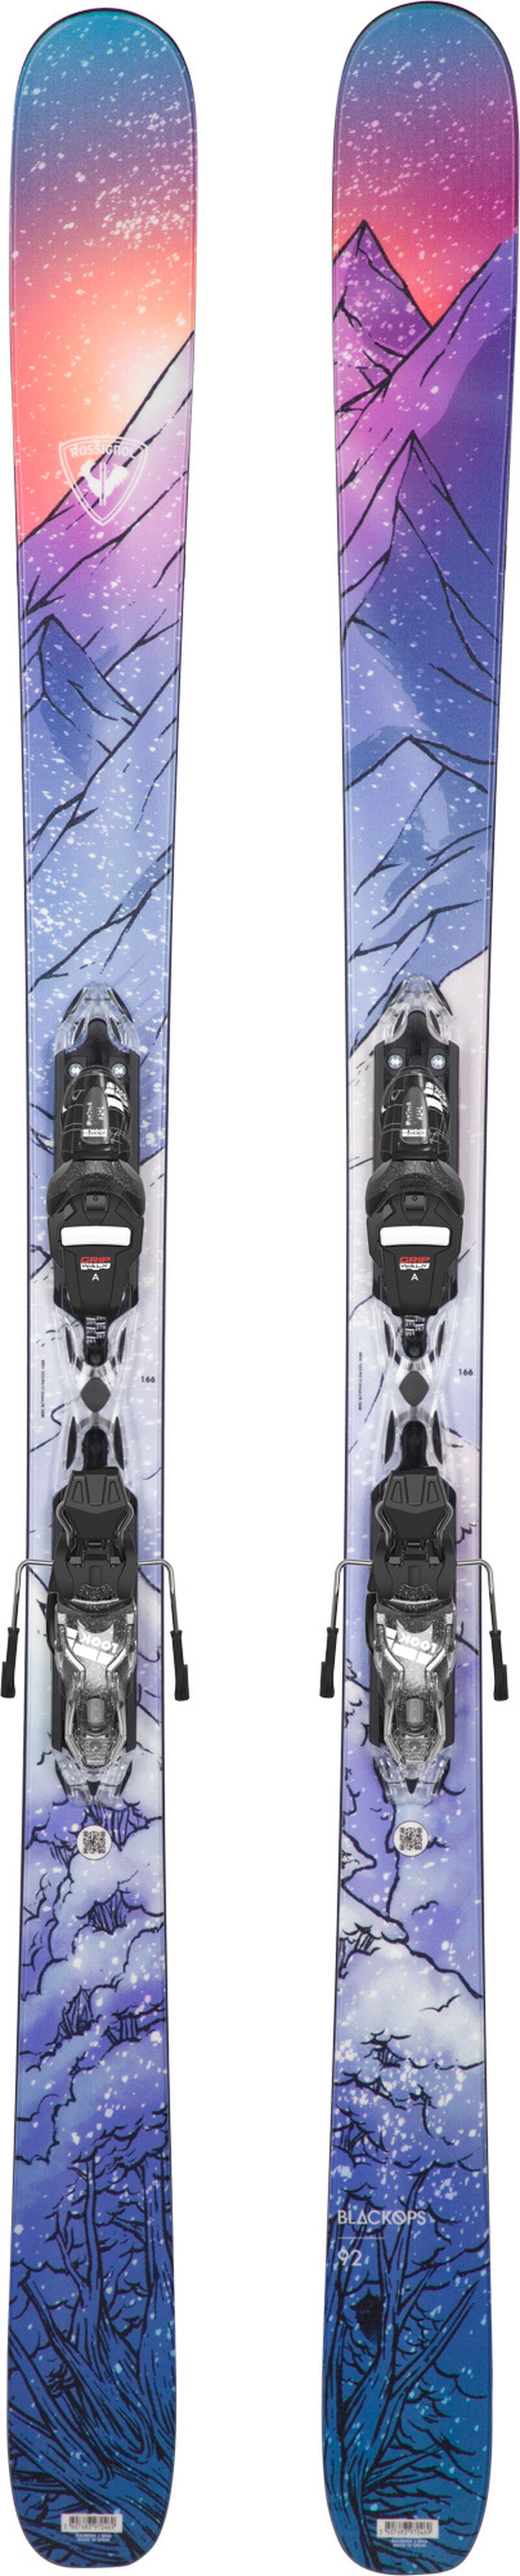 Skis de freeride femme BLACKOPS W 92 XPRESS